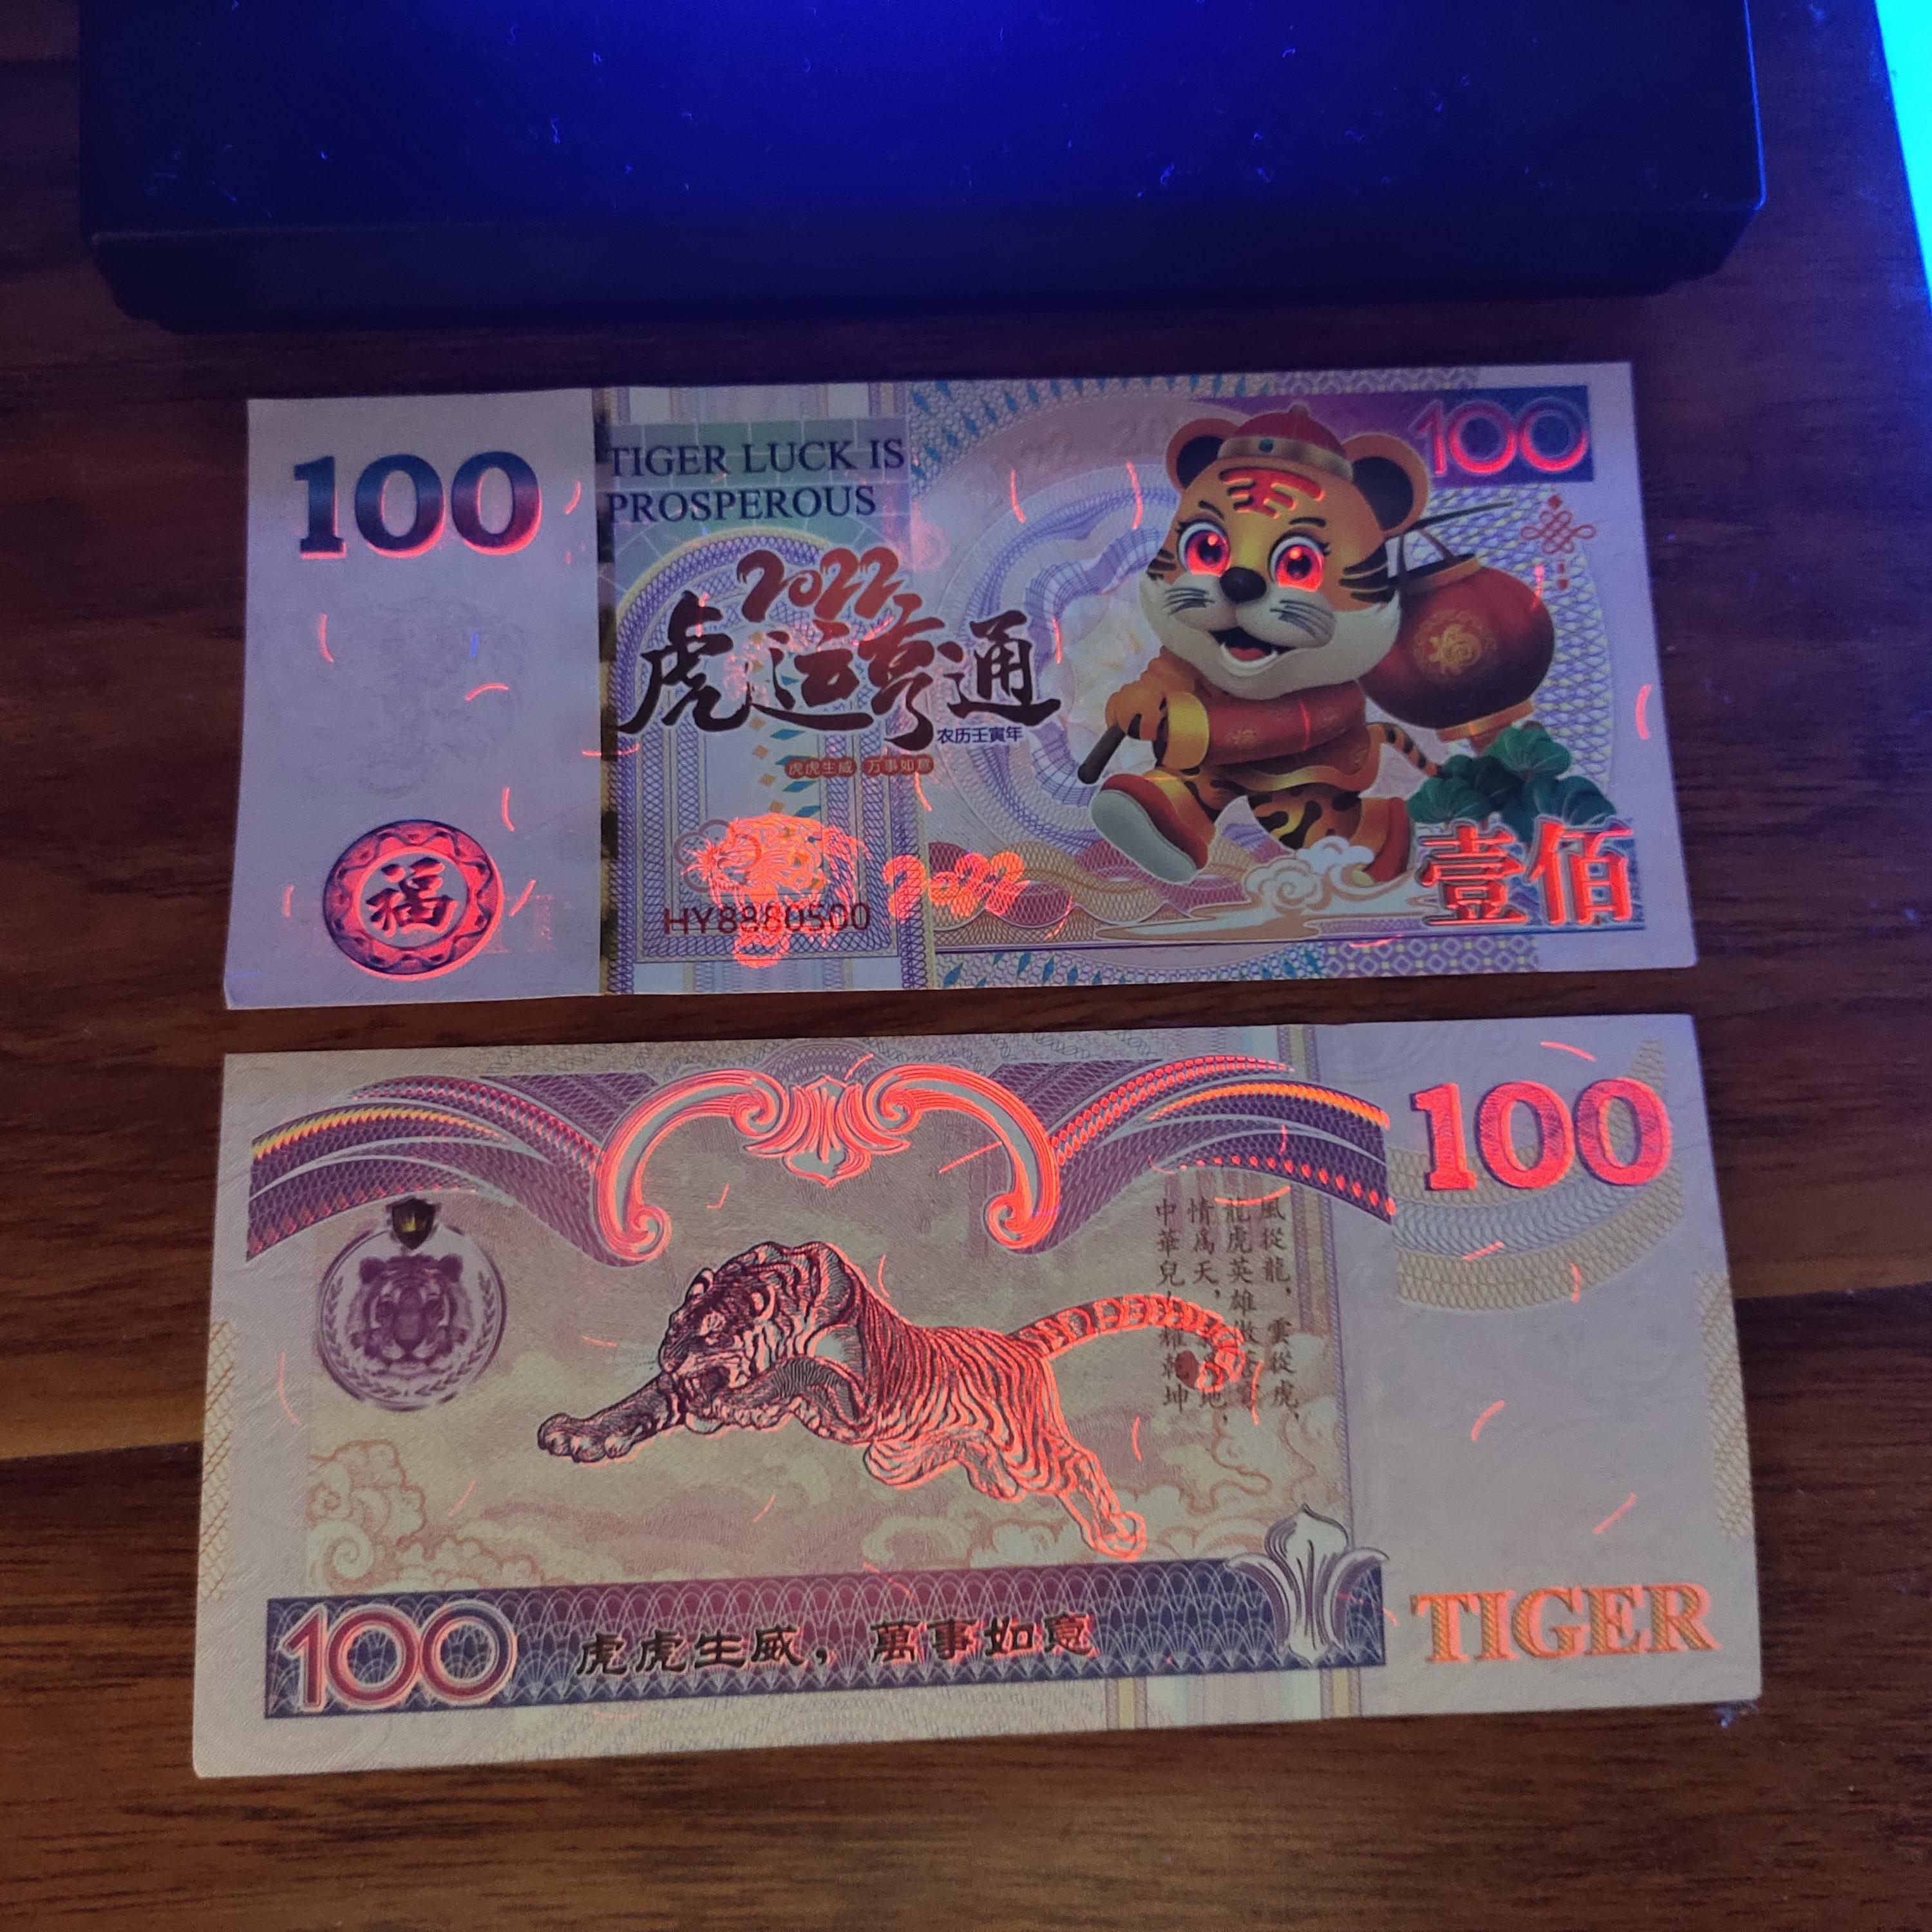 Bộ gồm 5 tờ tiền phong thủy hình Cọp Macao Đài Loan 100 kèm bao lì xì Tết 2022 dành tặng bạn bè, đồng nghiệp, người thân